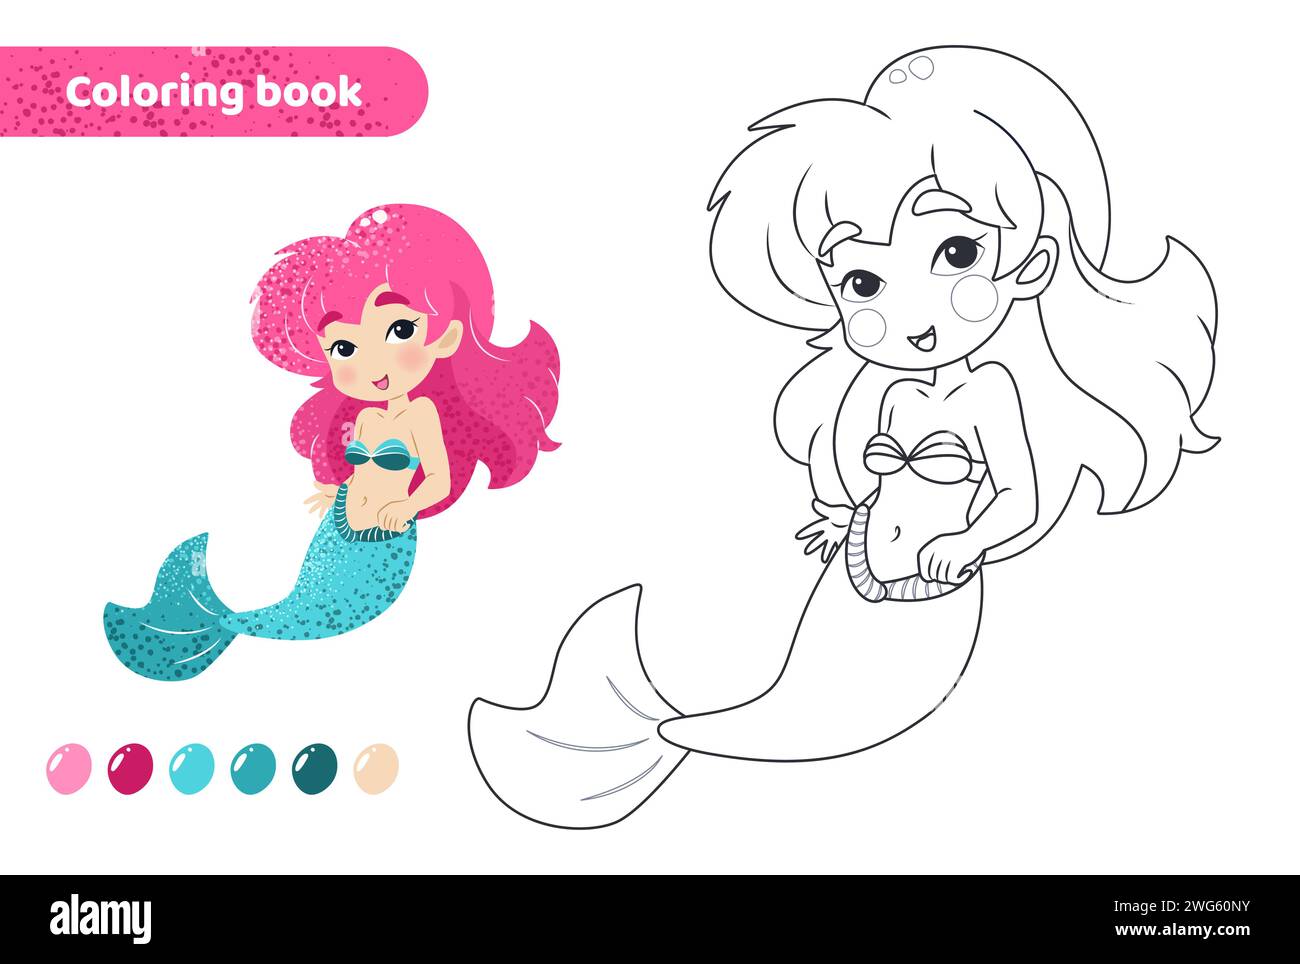 Coloring book for kids. Cute mermaid smiling. Stock Vector